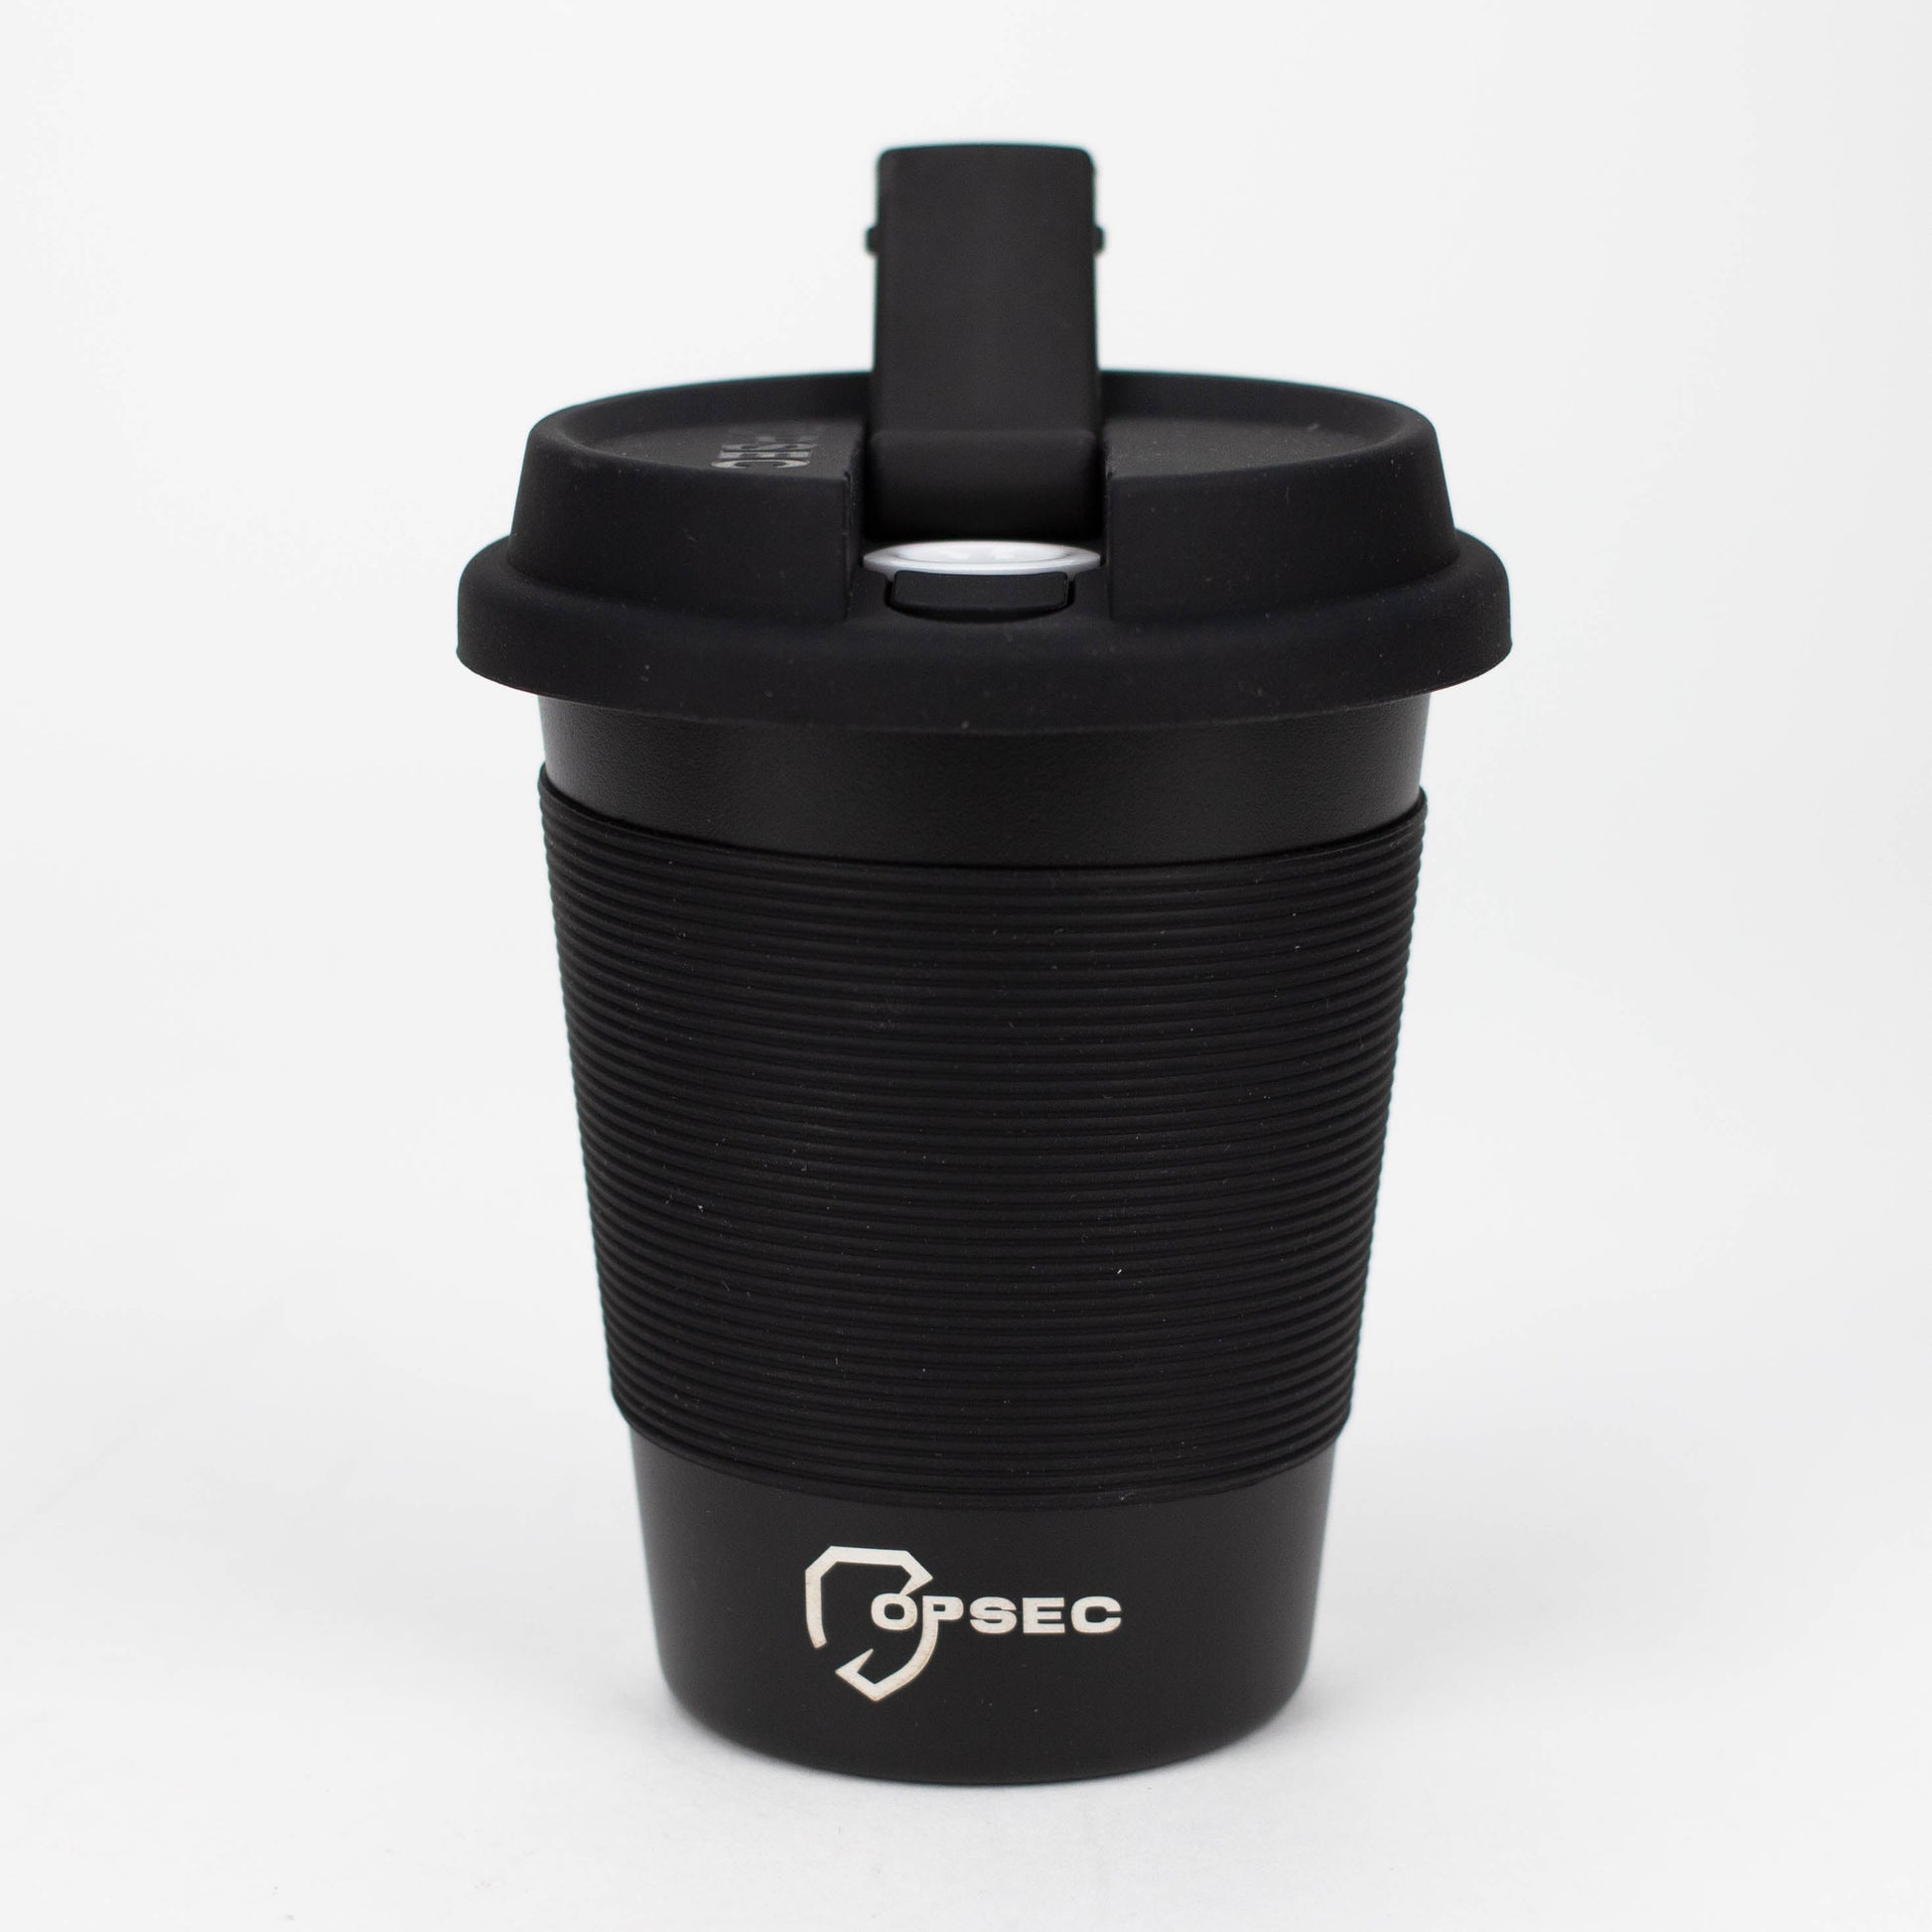 OPSEC Mug | Stealth Bubbler Bundle w/ Grinder and Extra Ceramic Bowl_13